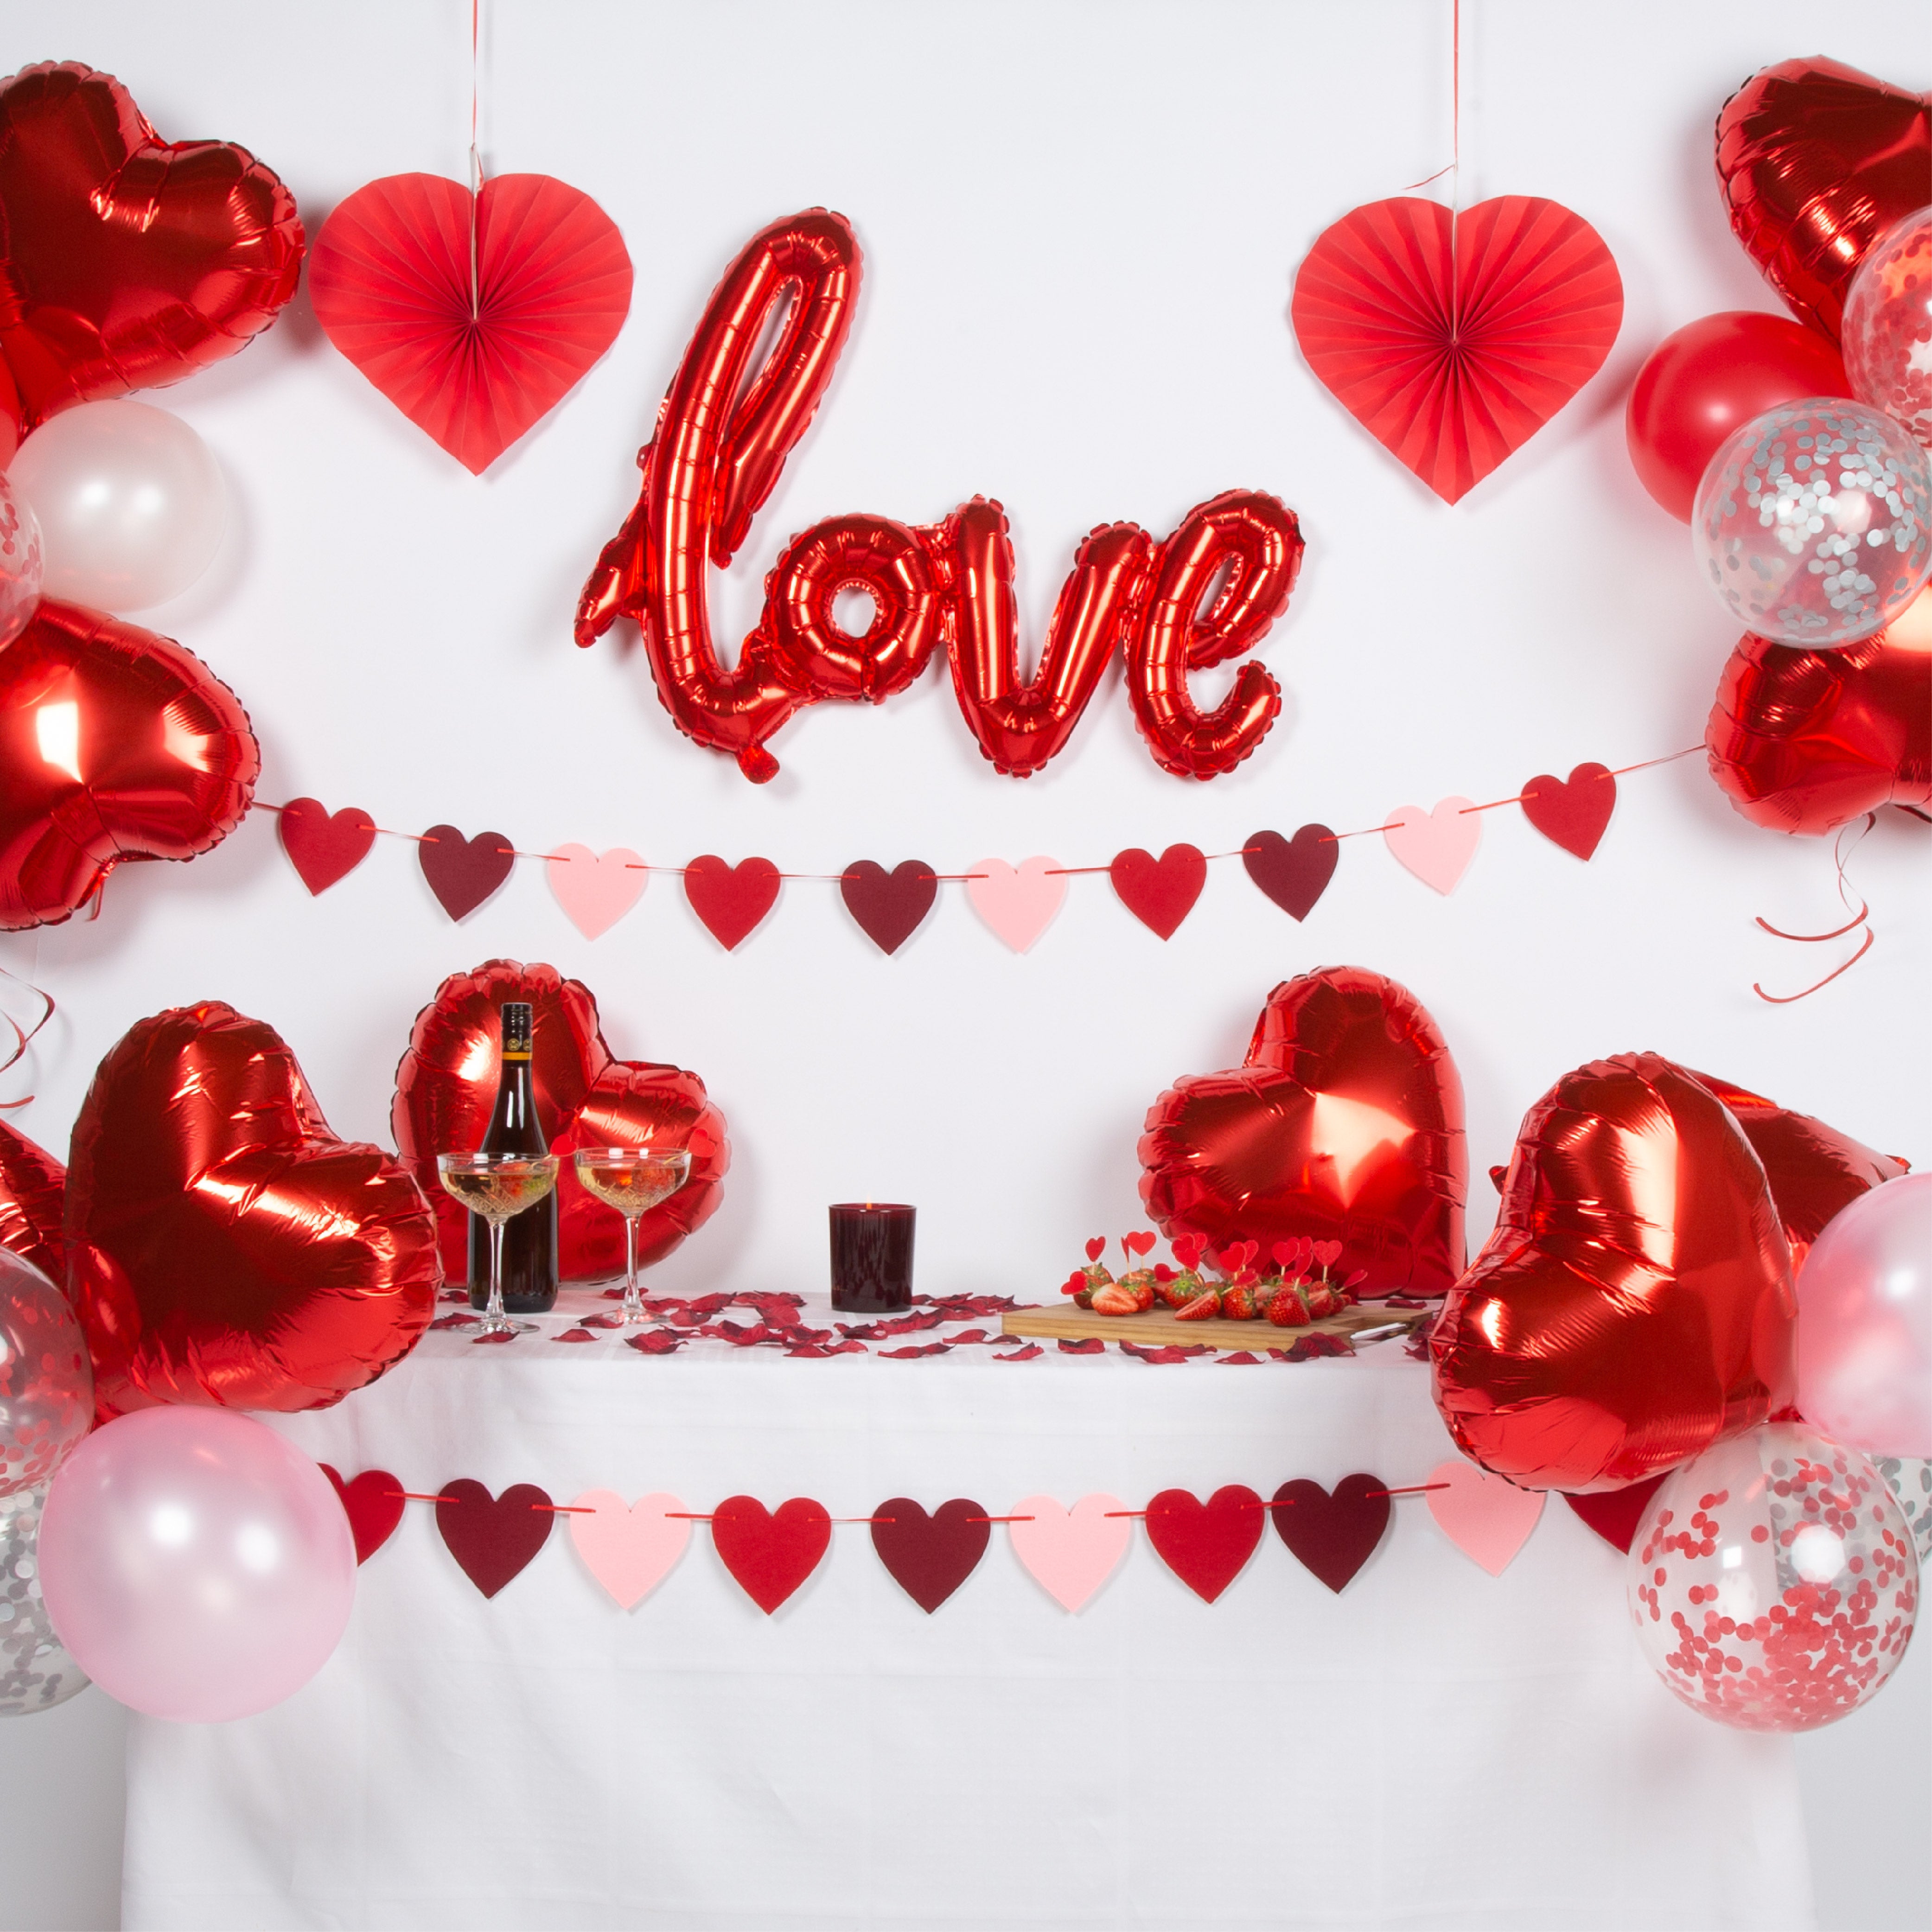 Love Valentijn & Liefde Feestpakket Roze, Rood, Wit